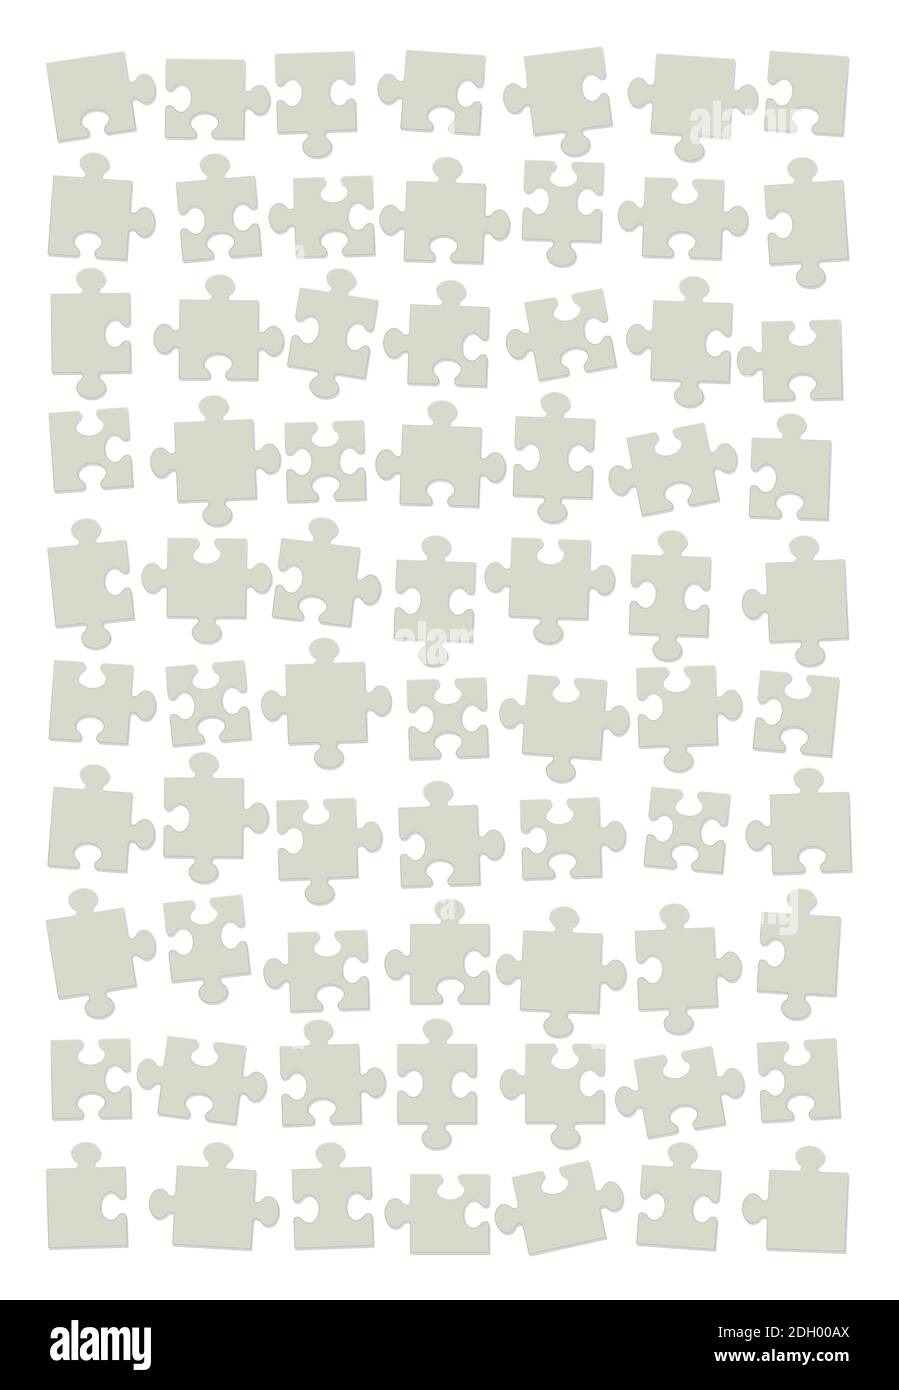 Puzzle Rückseite. Verstreute, gemischte und sortierte grüne Pappstücke, aber noch nicht zusammengestellt - Illustration auf weißem Hintergrund. Stockfoto